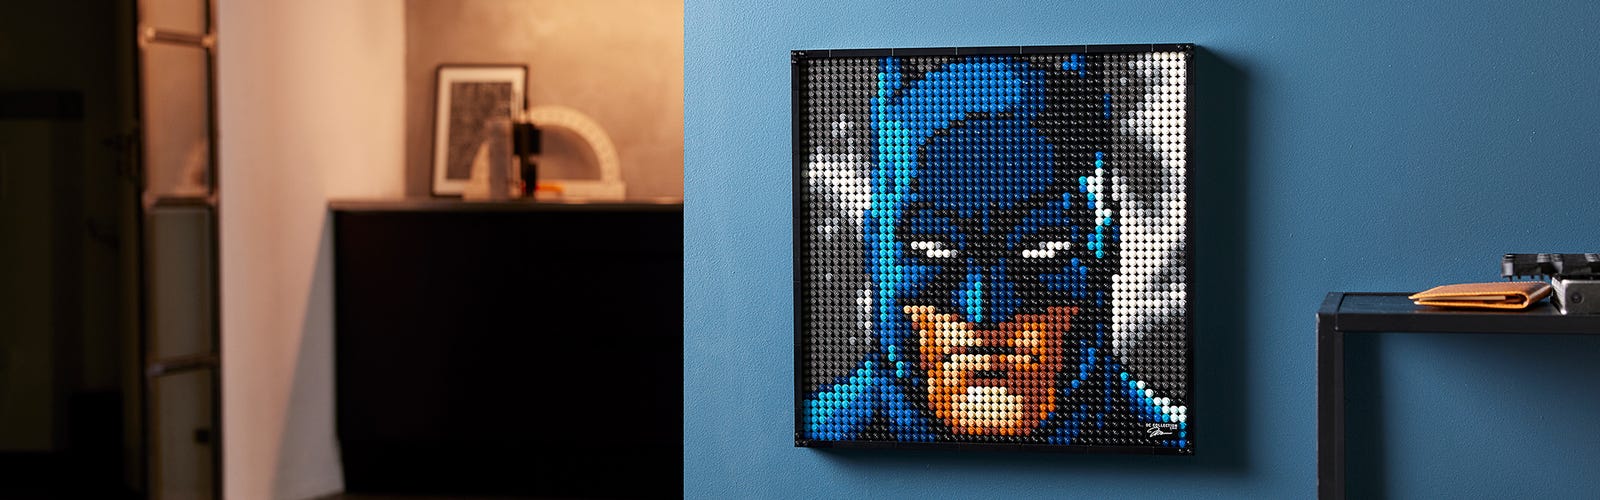 LEGO rivela il suo nuovo set della linea Art dedicato a Batman